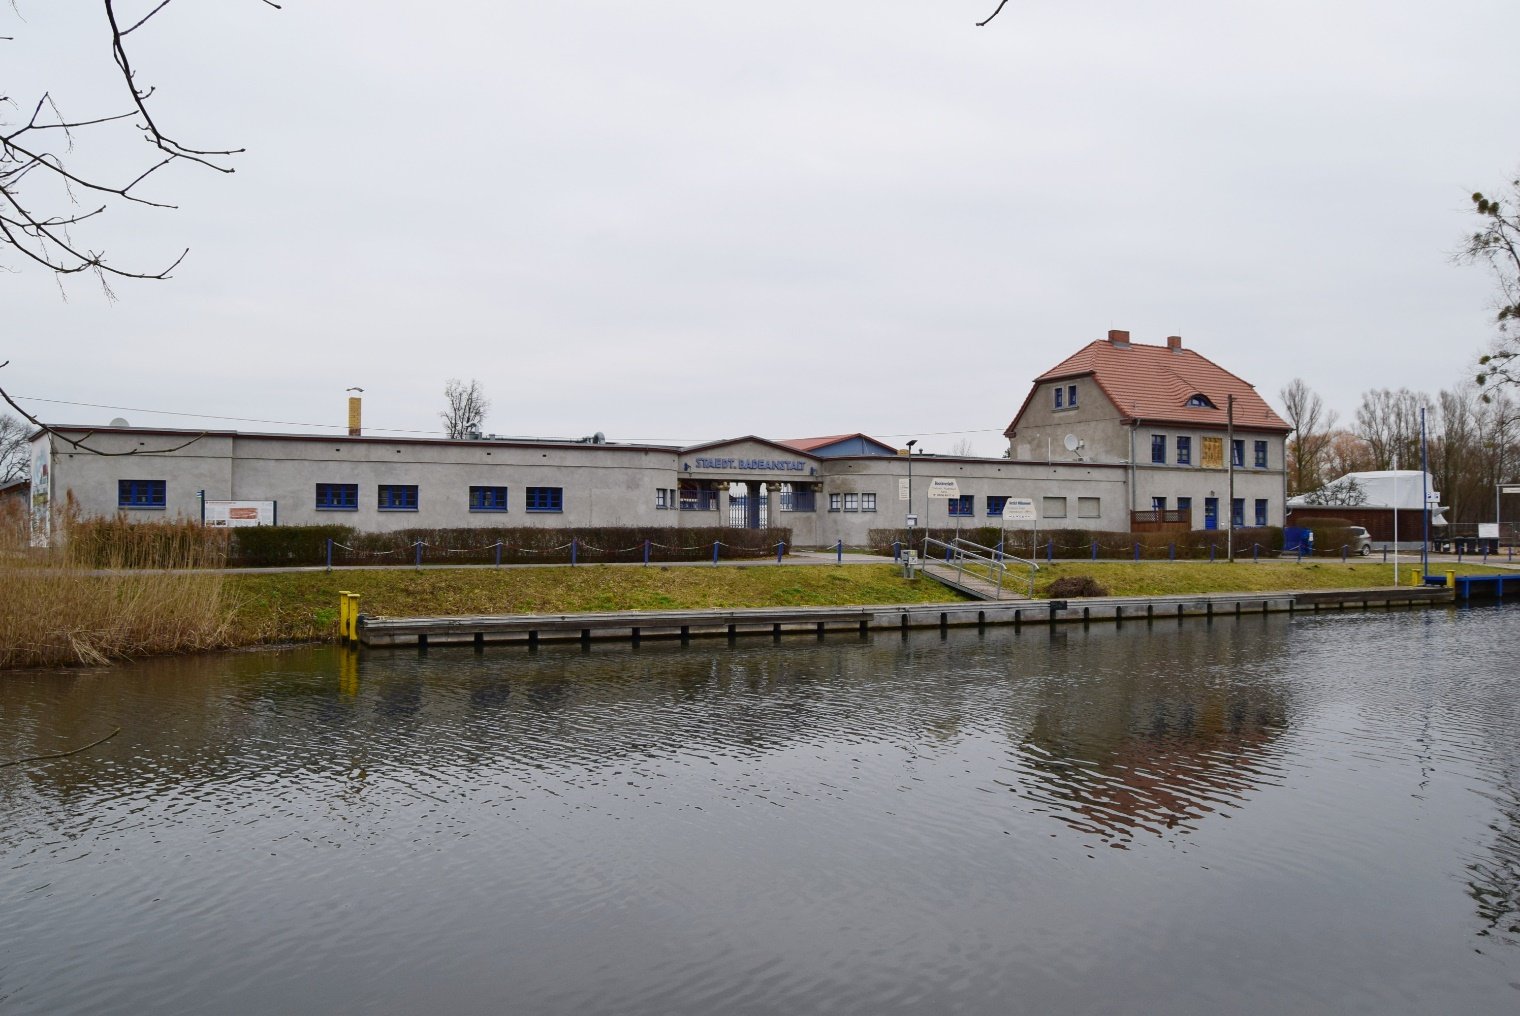 Fotografie, Städtische Badeanstalt Eberswalde nach der Sanierung, 2021 (Museum Eberswalde CC BY-NC-SA)